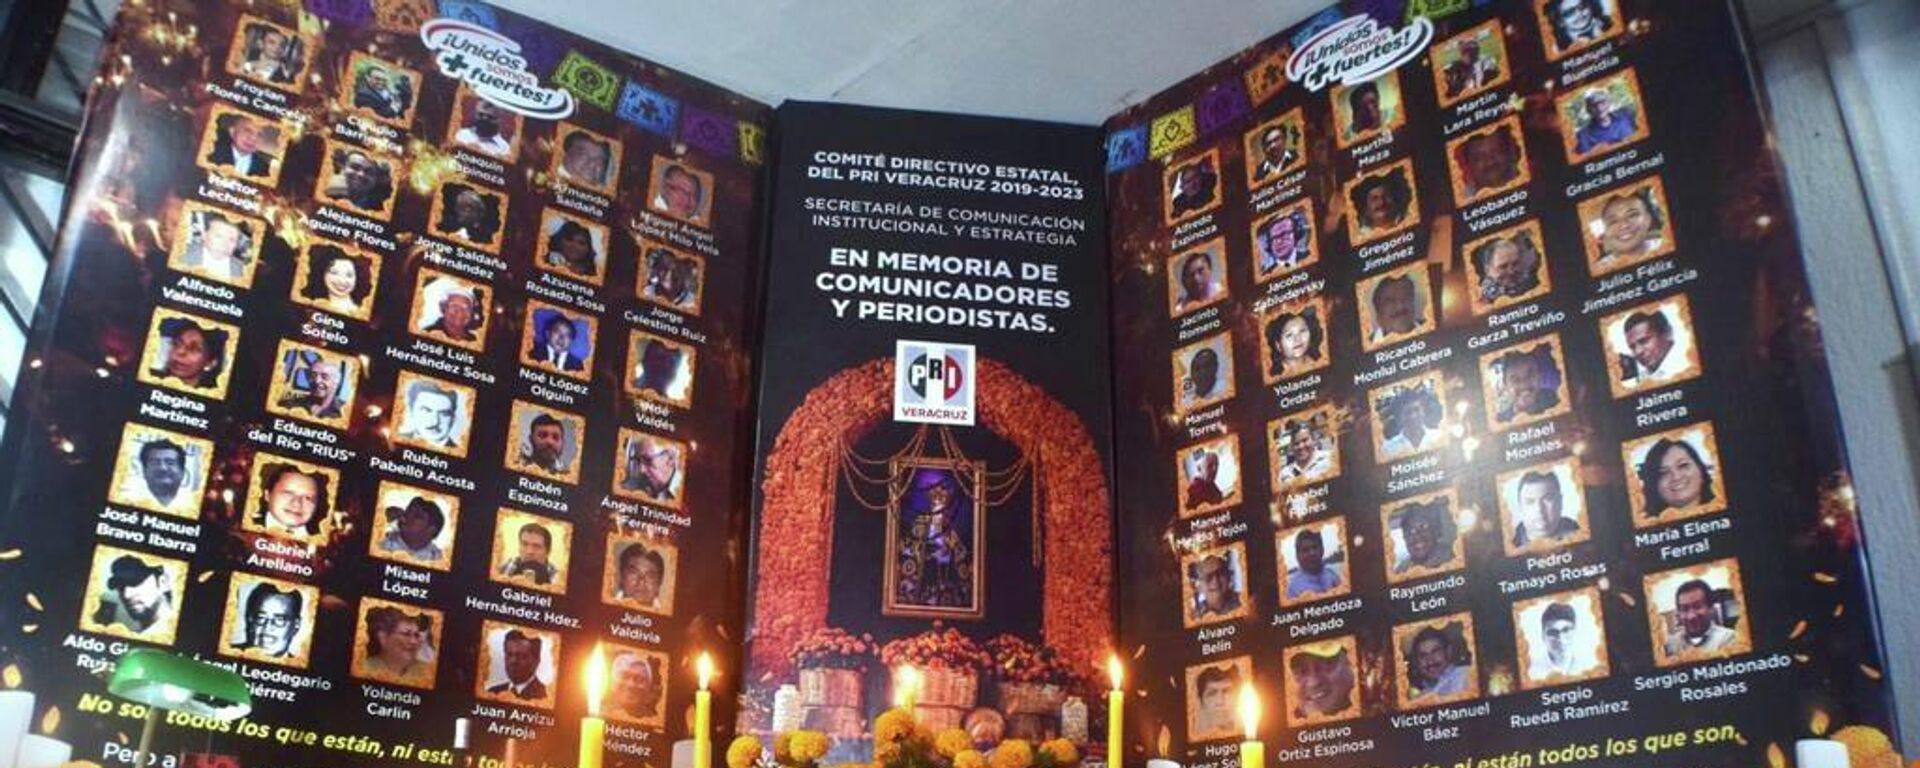 Homenaje del PRI en Veracruz a comunicadores y periodistas fallecidos. - Sputnik Mundo, 1920, 29.10.2021